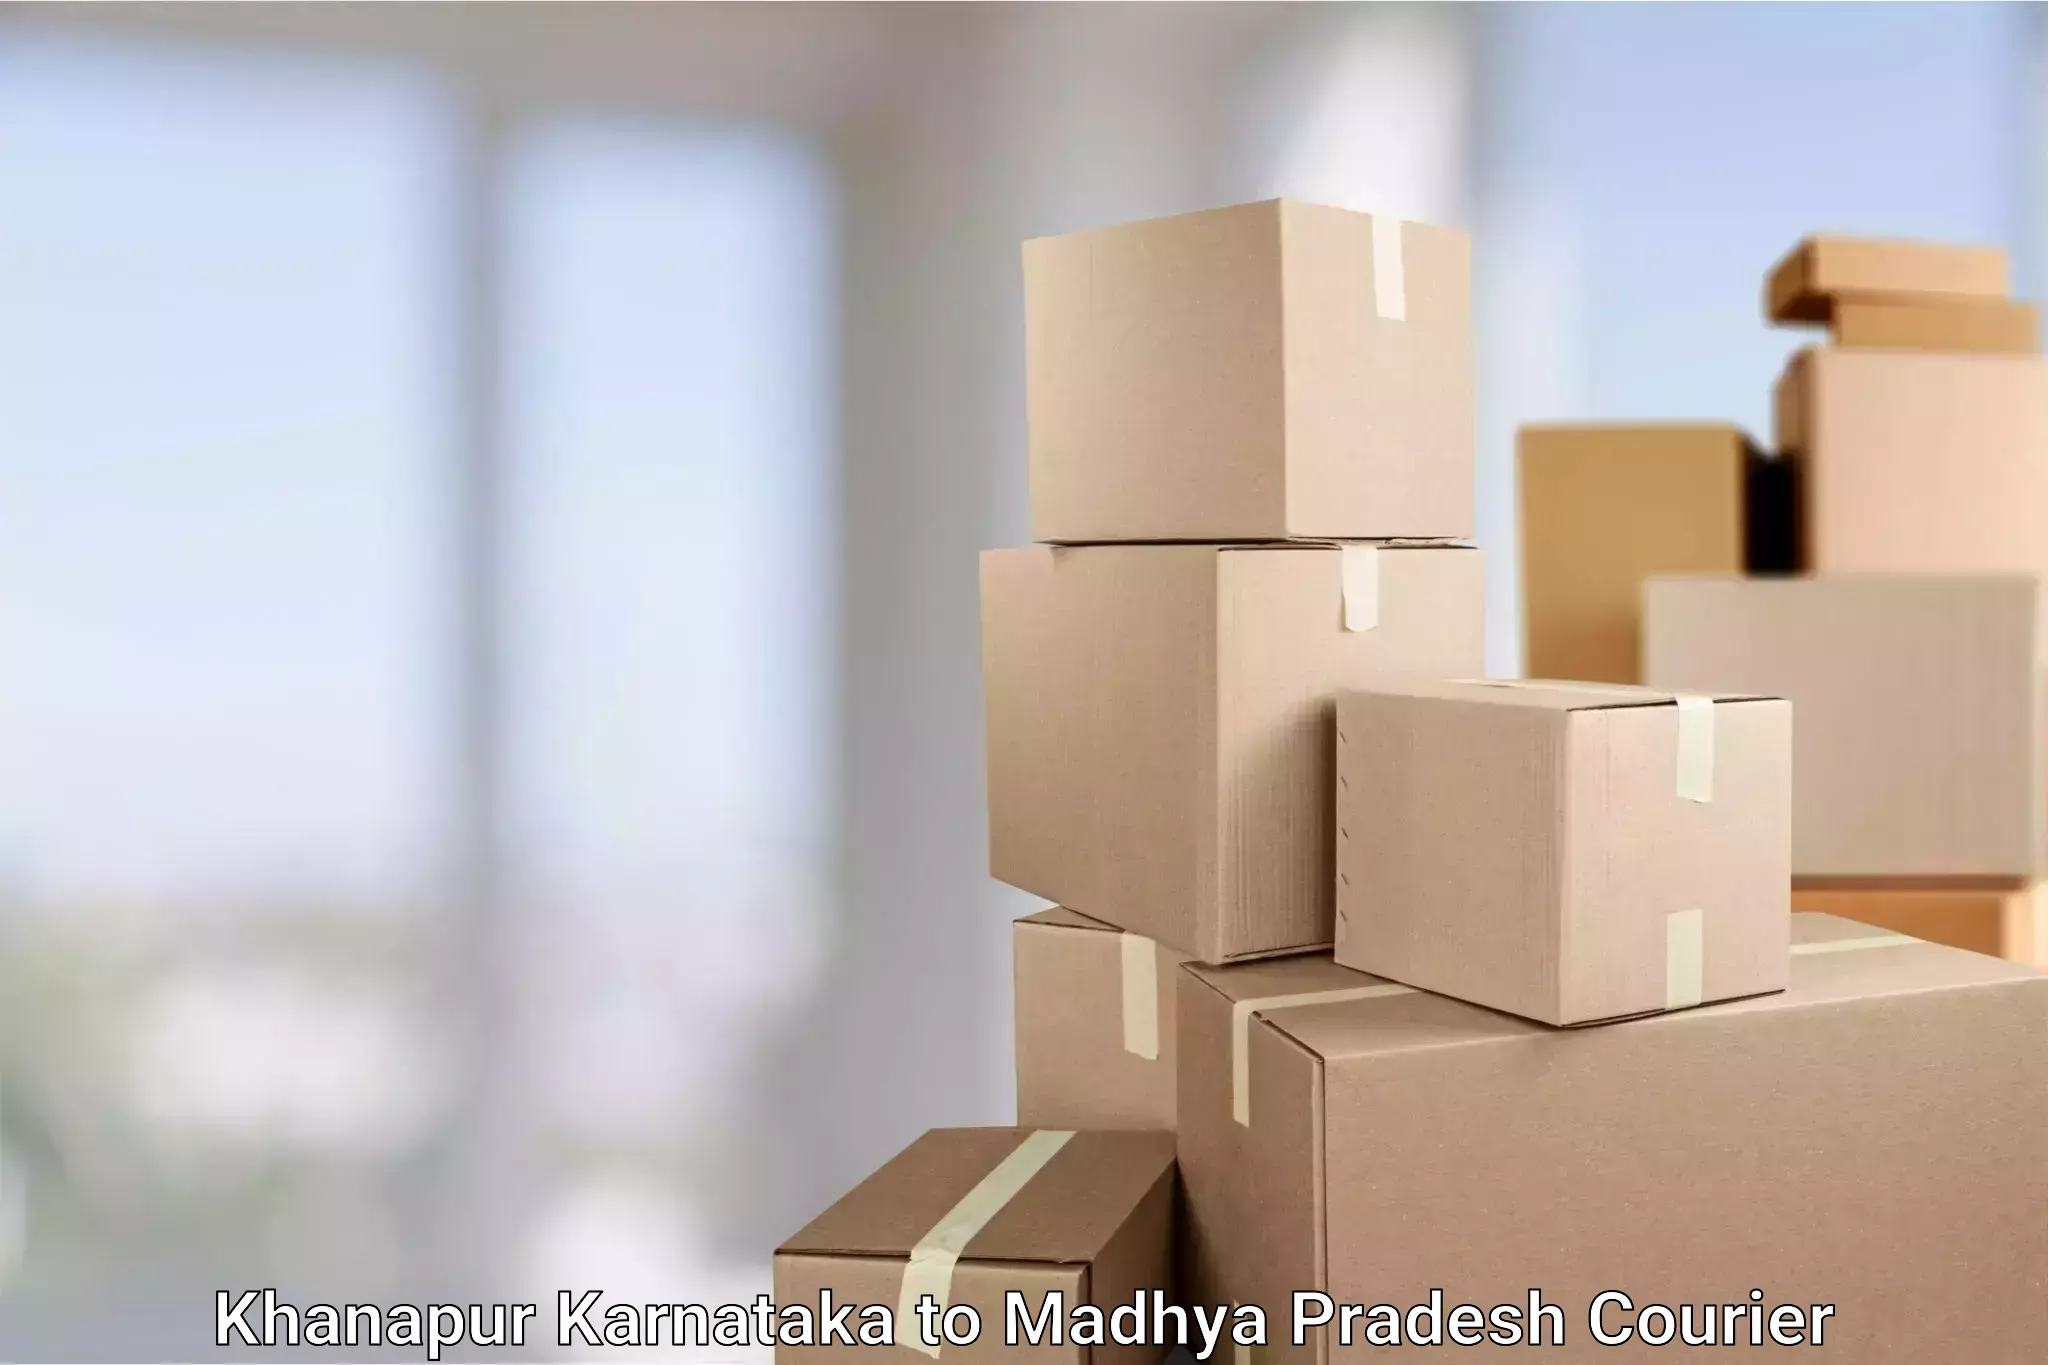 Cost-effective shipping solutions Khanapur Karnataka to Ashoknagar